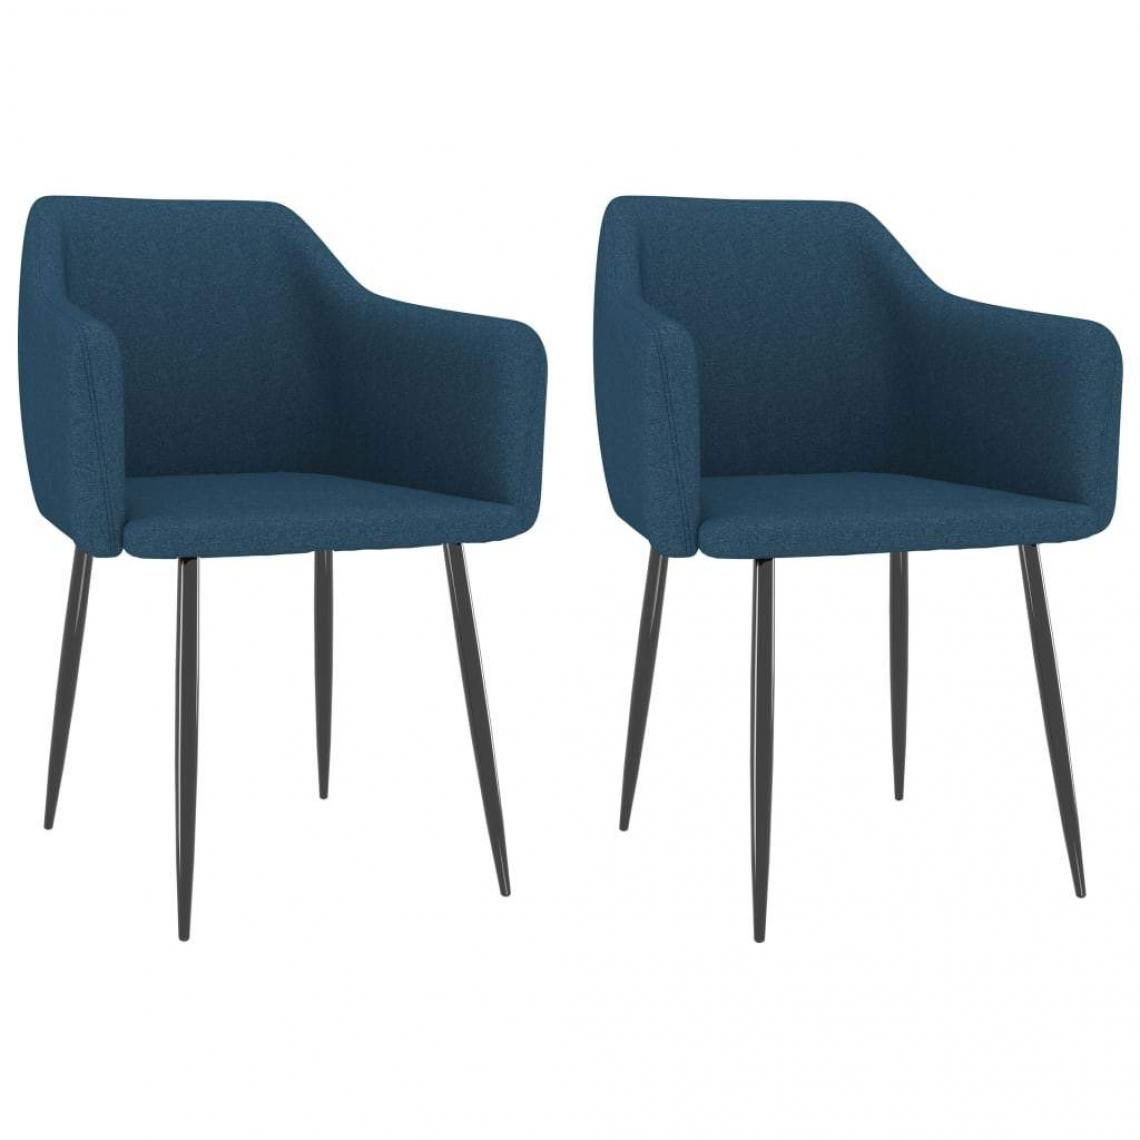 Decoshop26 - Lot de 2 chaises de salle à manger cuisine design moderne tissu bleu CDS020229 - Chaises